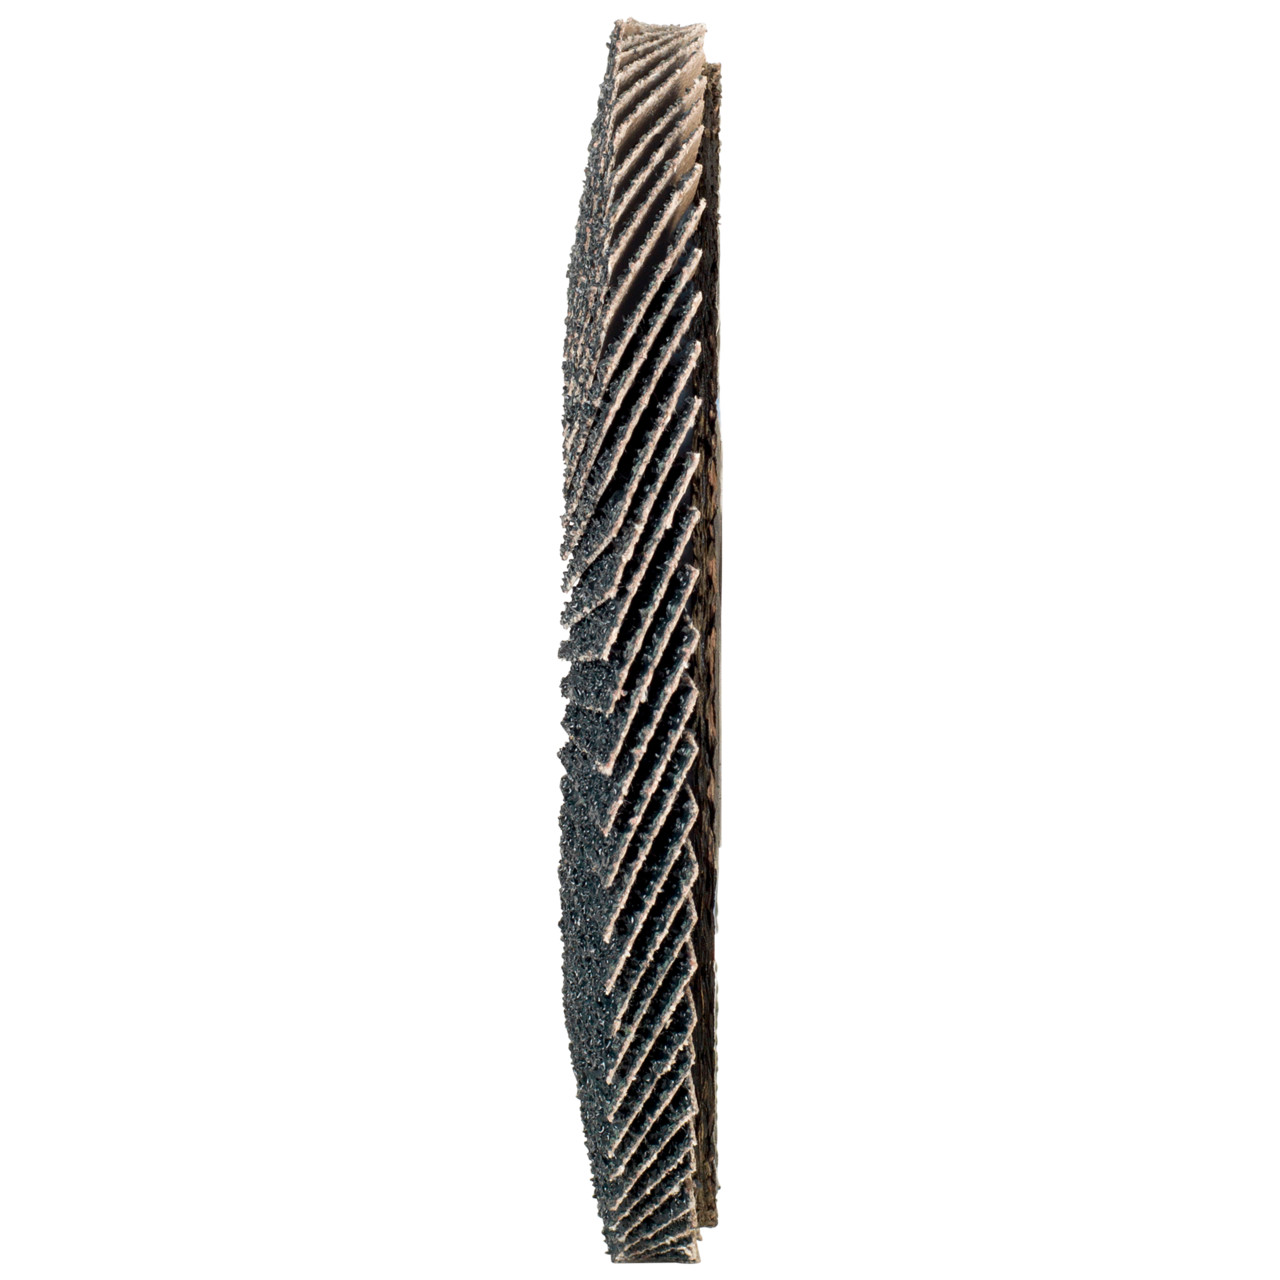 Tyrolit Arandela dentada DxH 178x22,2 2en1 para acero y acero inoxidable, P40, forma: 28A - versión recta (versión con cuerpo de soporte de fibra de vidrio), Art. 668696